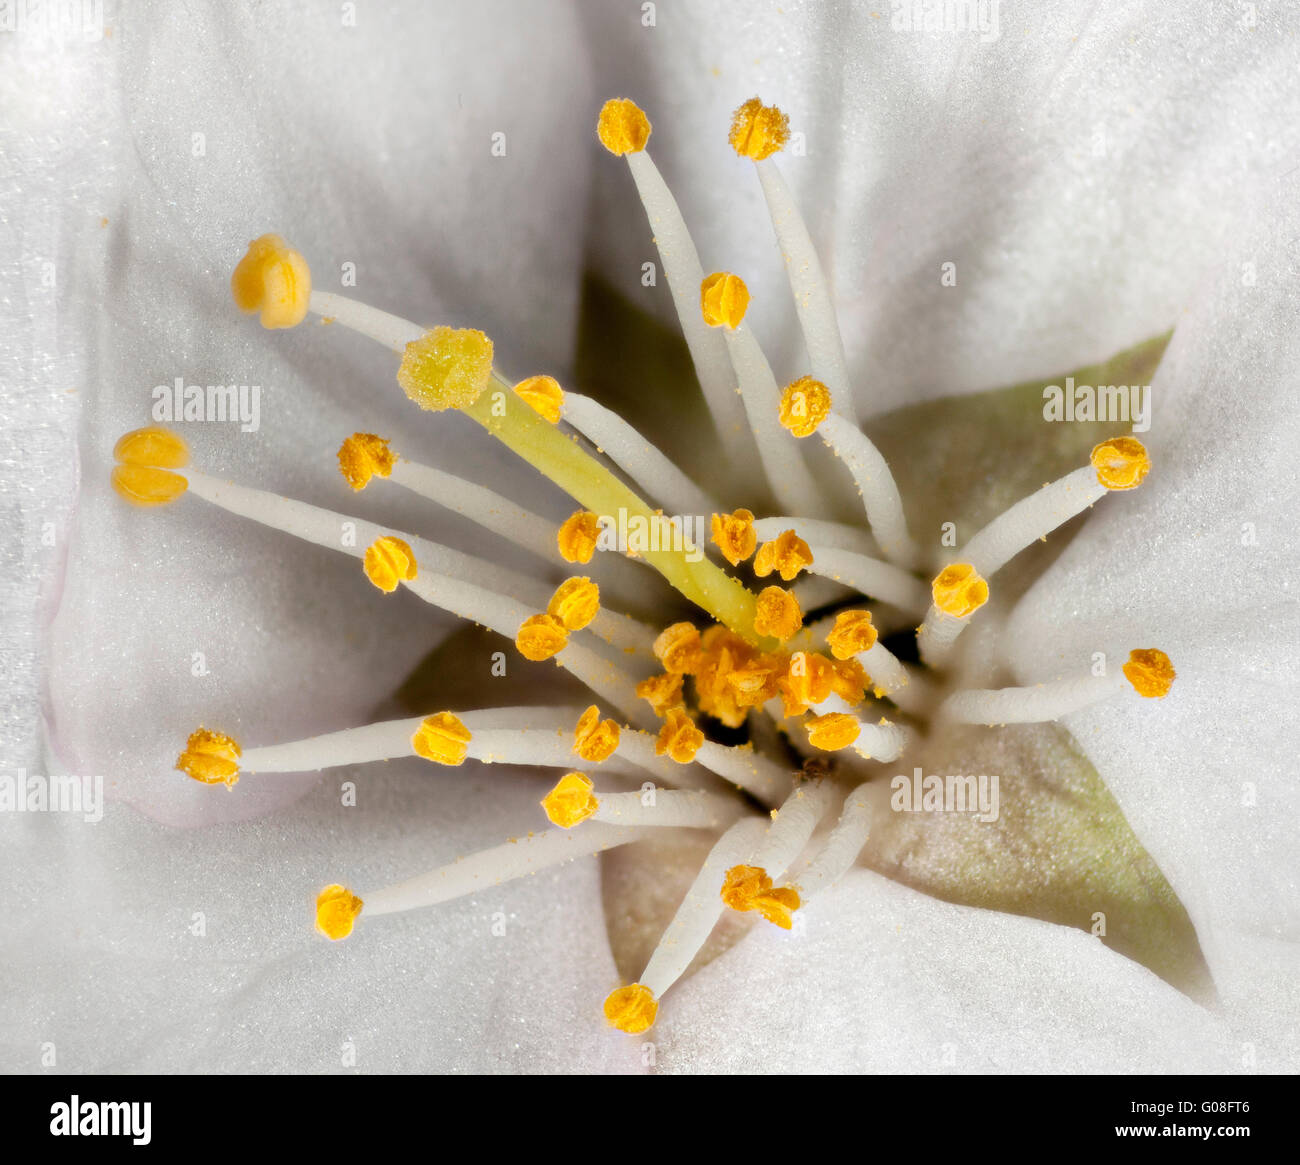 Macro haute vue d'une fleur de Prunus montrant le pollen des anthères laden, les étamines, la stigmatisation Banque D'Images